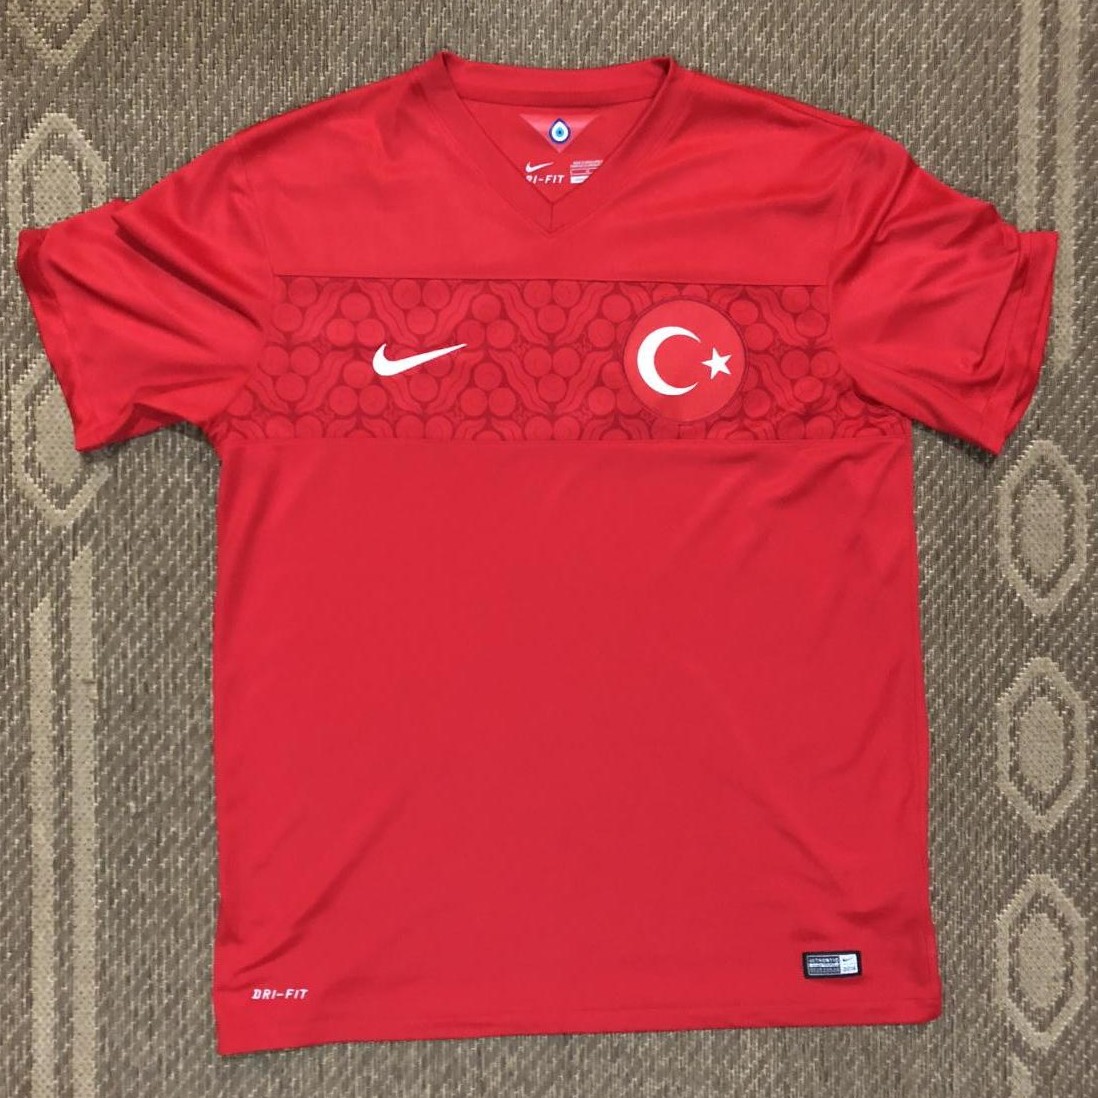 Turquie t-shirt hommes shirt em wm Football Fan turkey türkiy soccer FEMME NOUVEAU